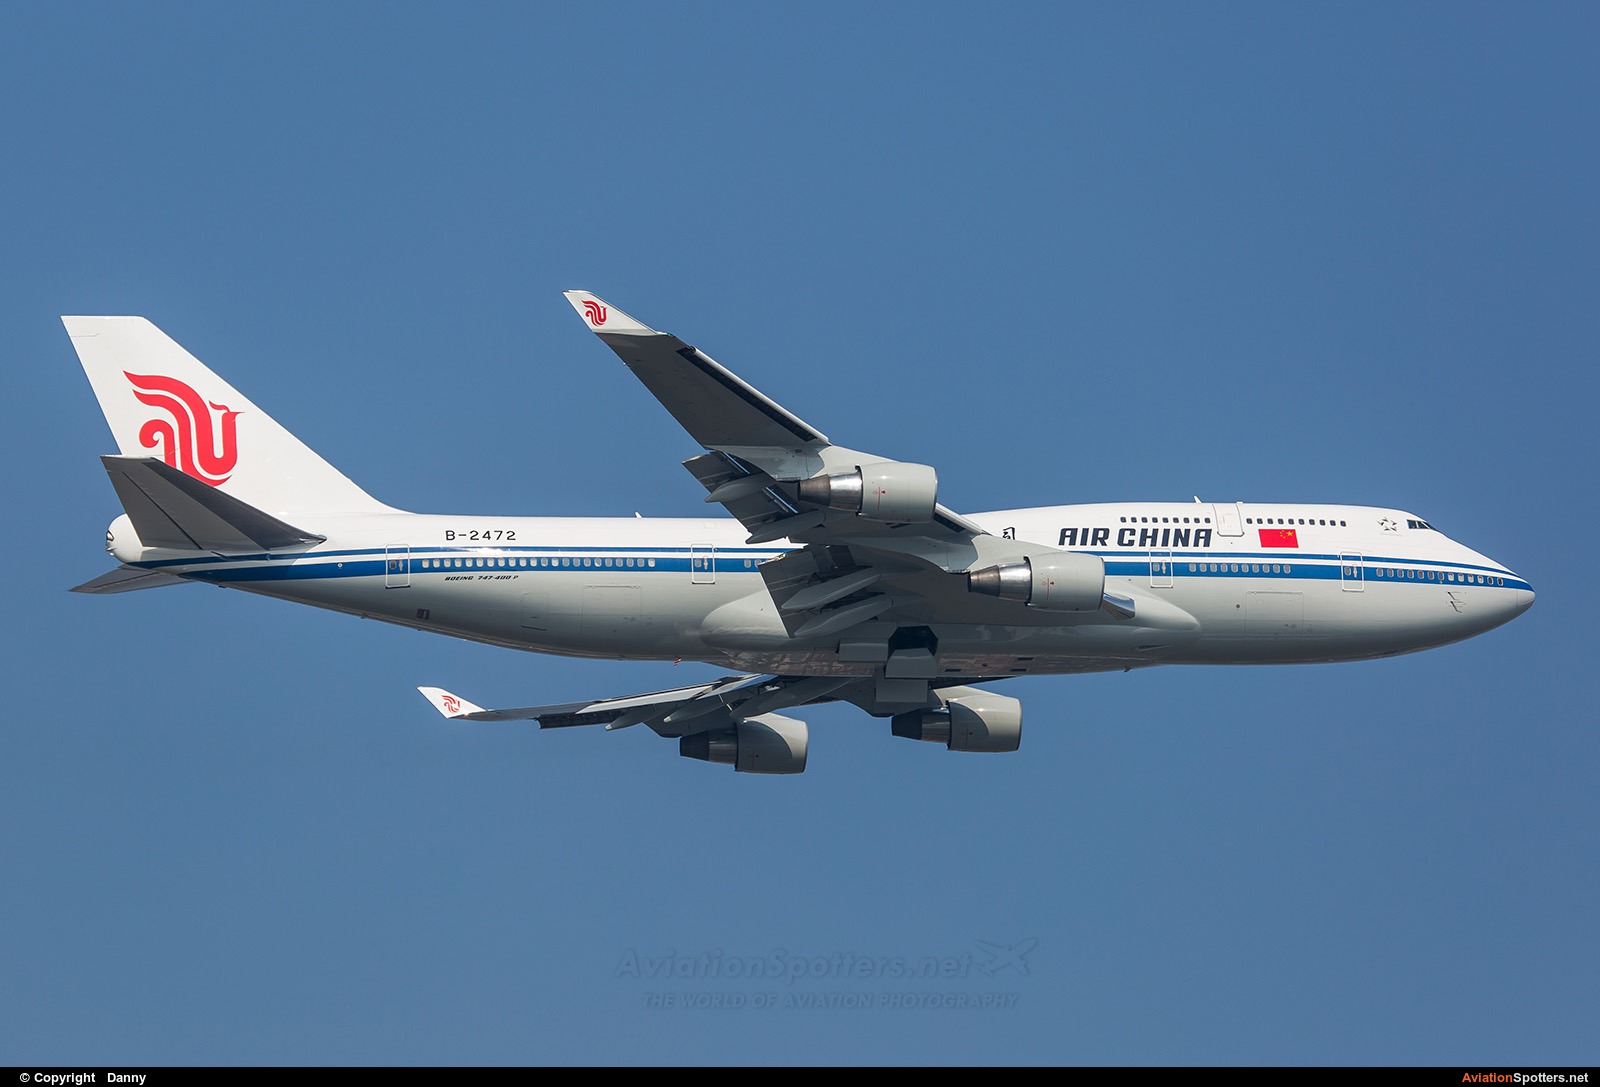 Air China  -  747-400ER  (B-2472) By Danny (Digdis)